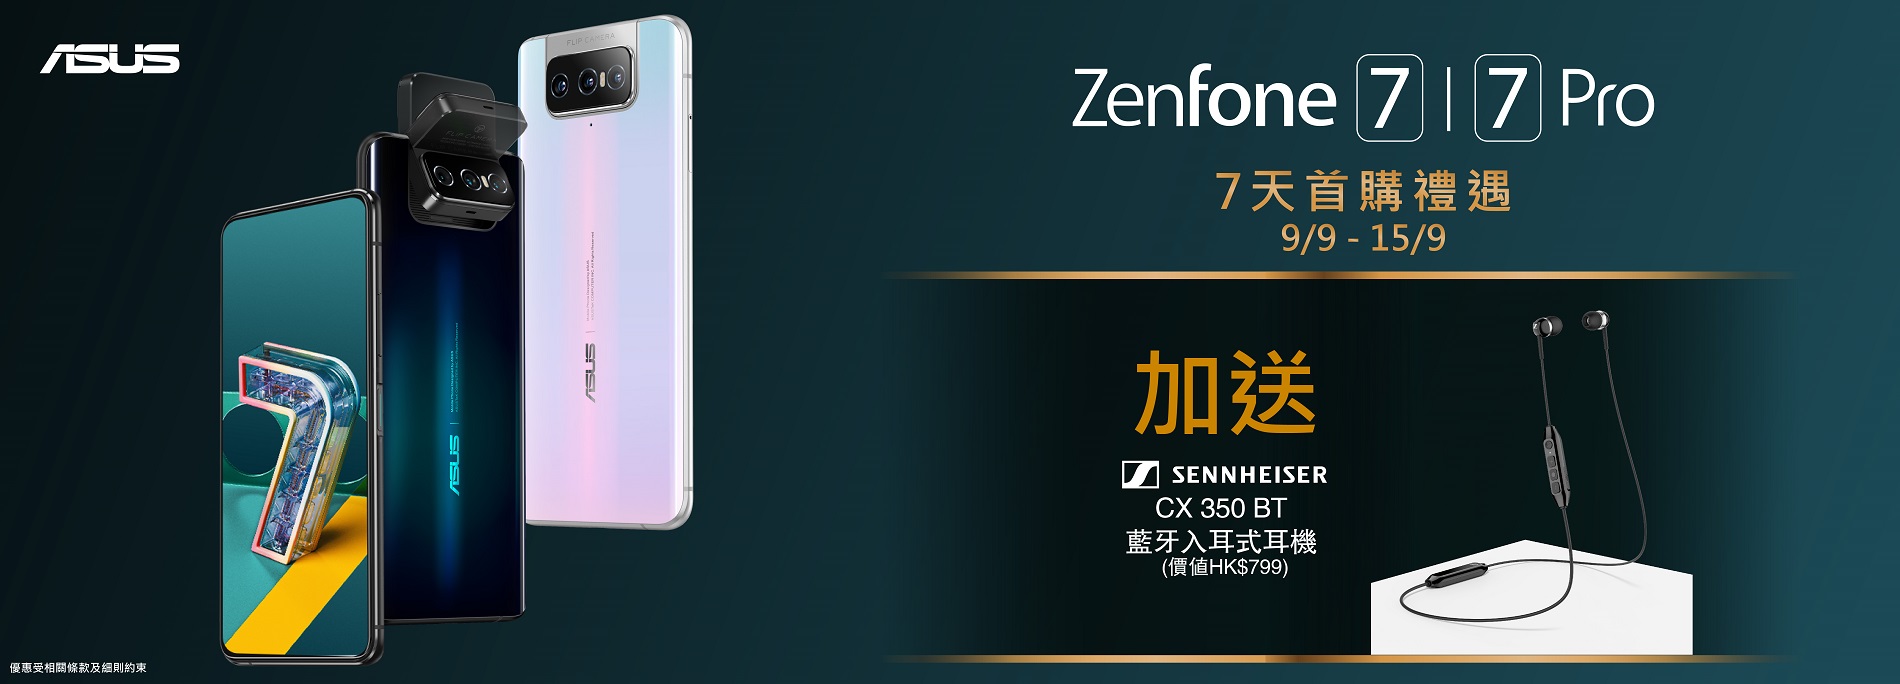 ASUS ZenFone 7 首購限定優惠